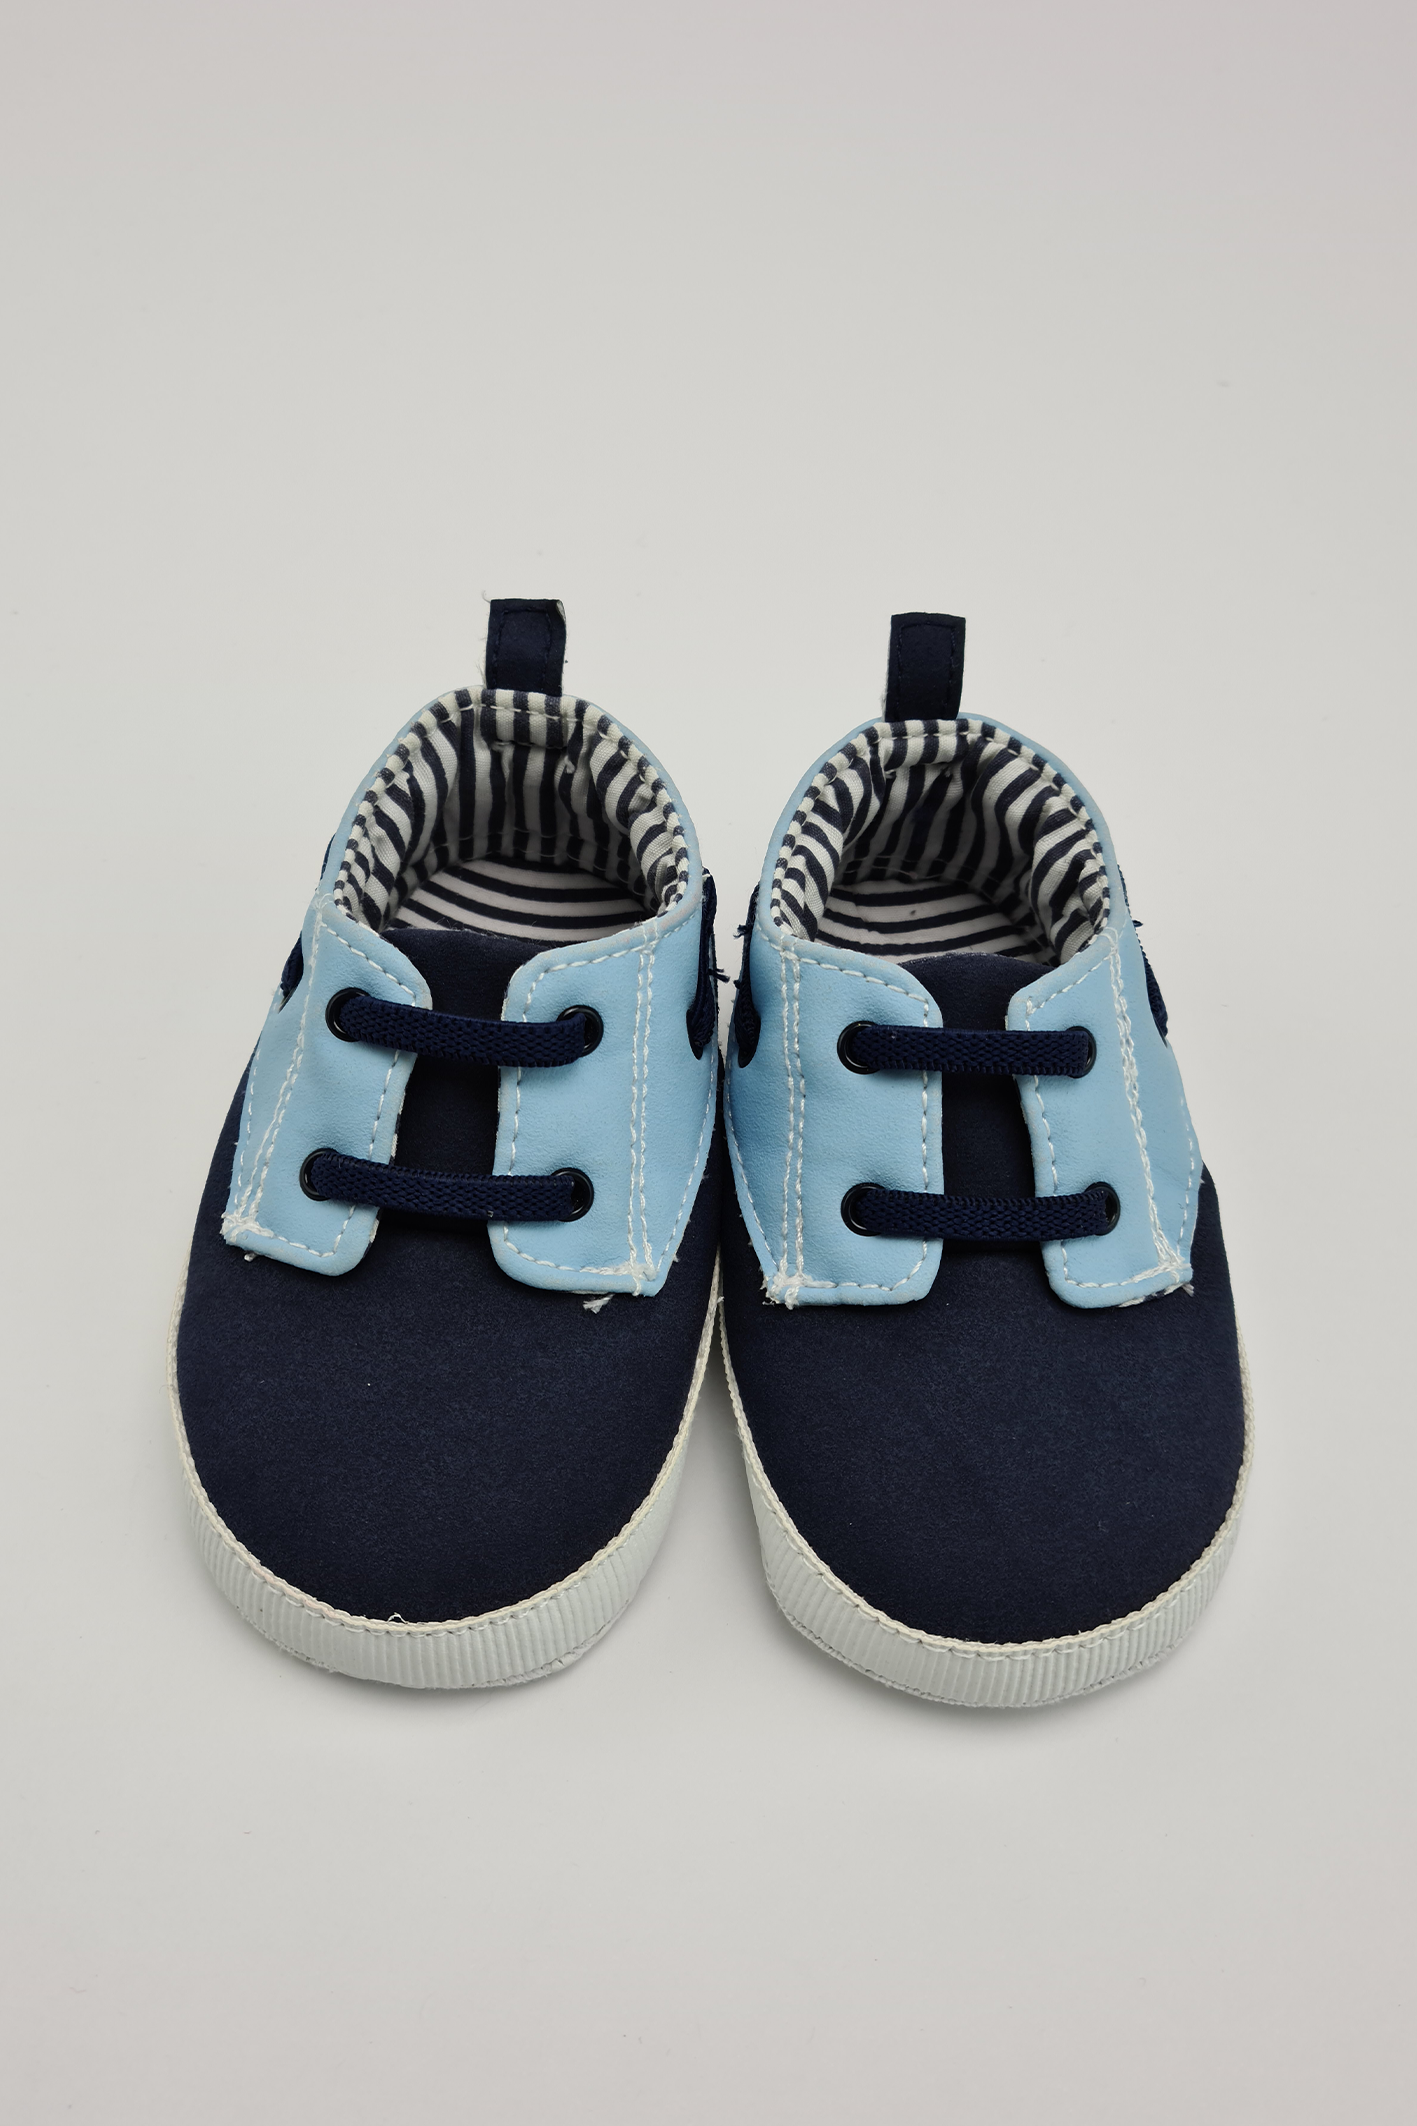 Size 3 - Blue Soft Sole Shoes - Precuddled.com